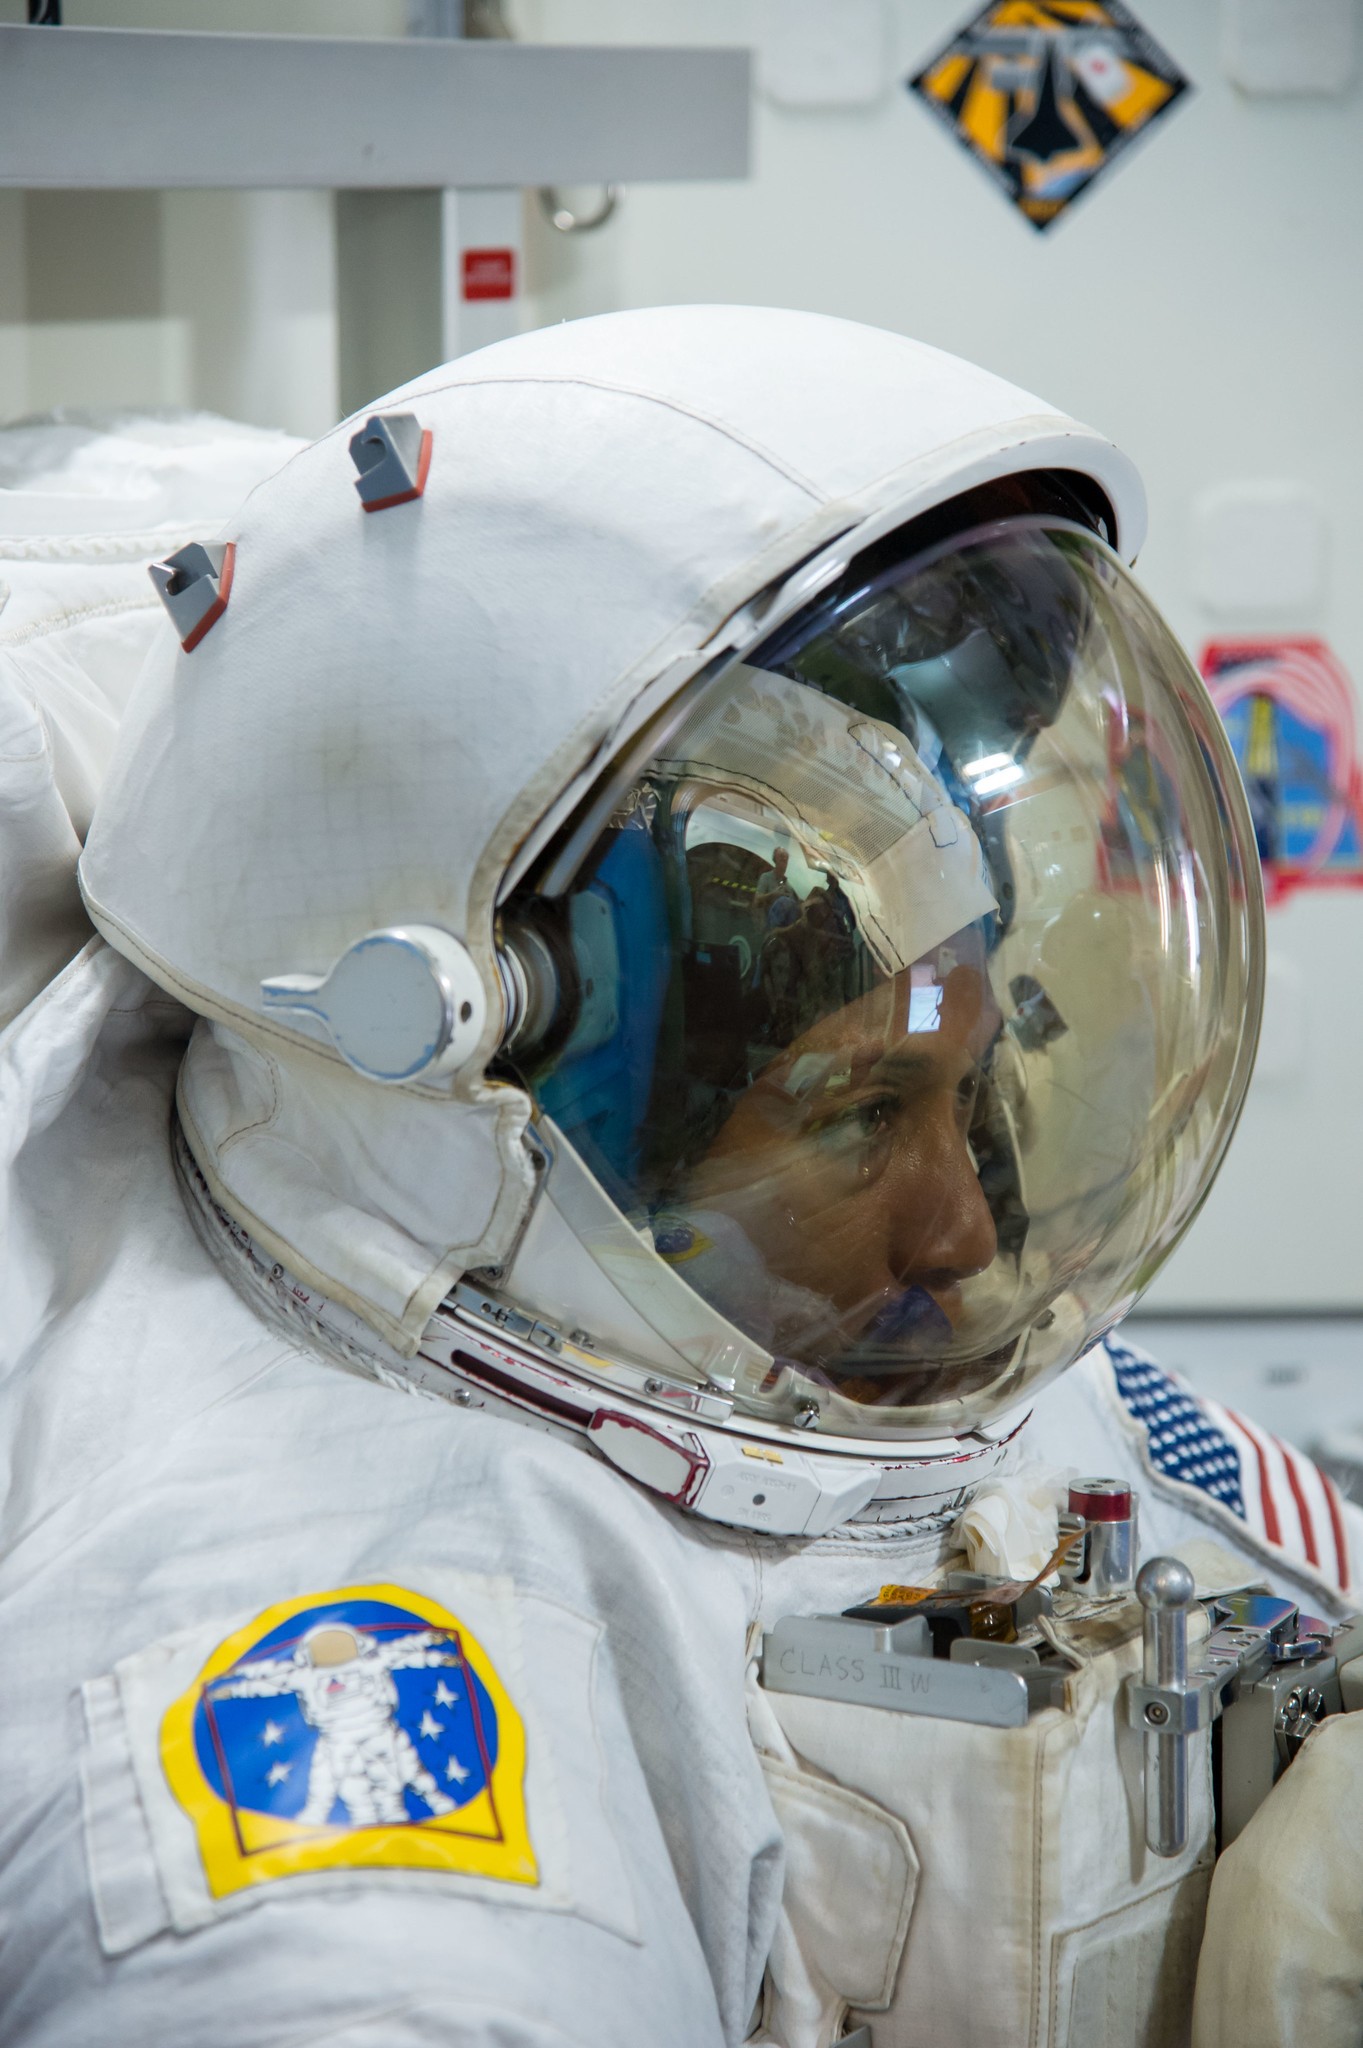 A cientista experimenta o traje espacial da NASA durante treinamento (Foto: NASA)